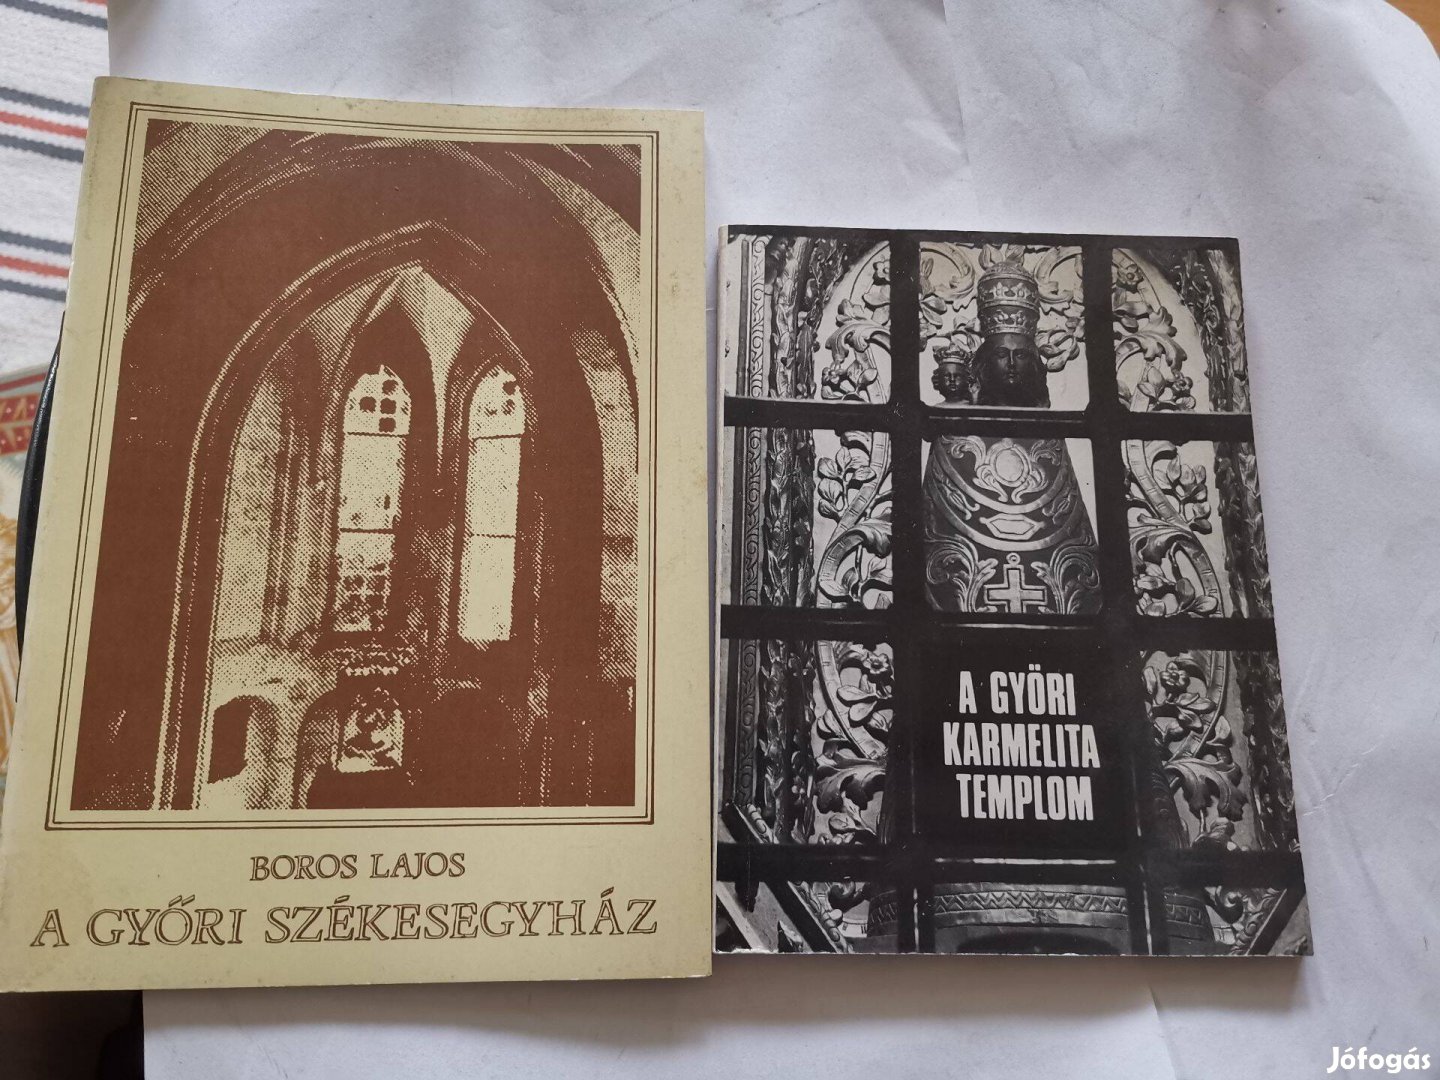 Boros Lajos - A győri székesegyház + karmelita templom - 2db könyv -